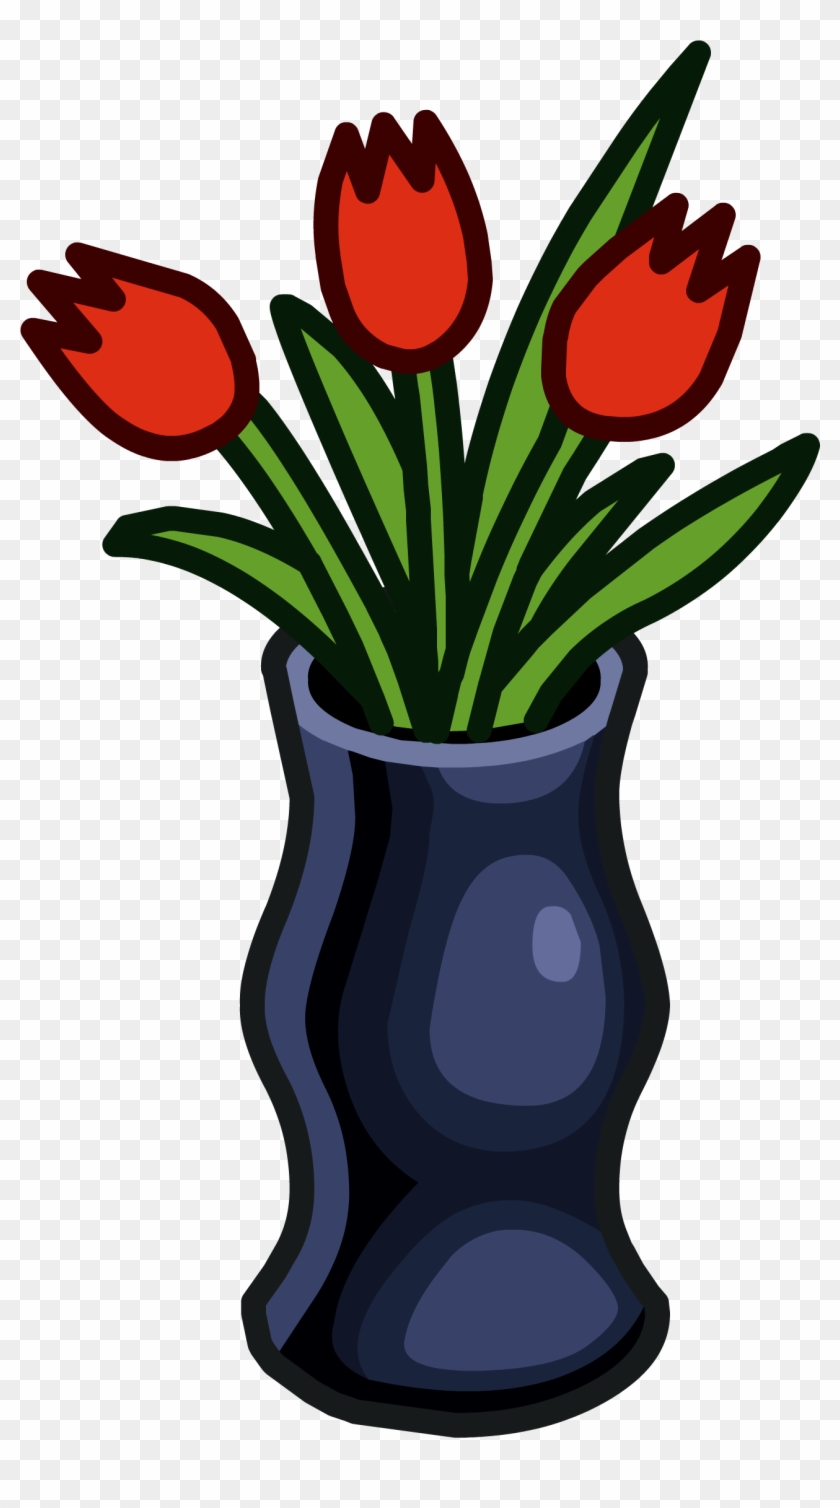 Club Penguin Entertainment Inc Flower Vase Floristry - Club Penguin Entertainment Inc Flower Vase Floristry #463273